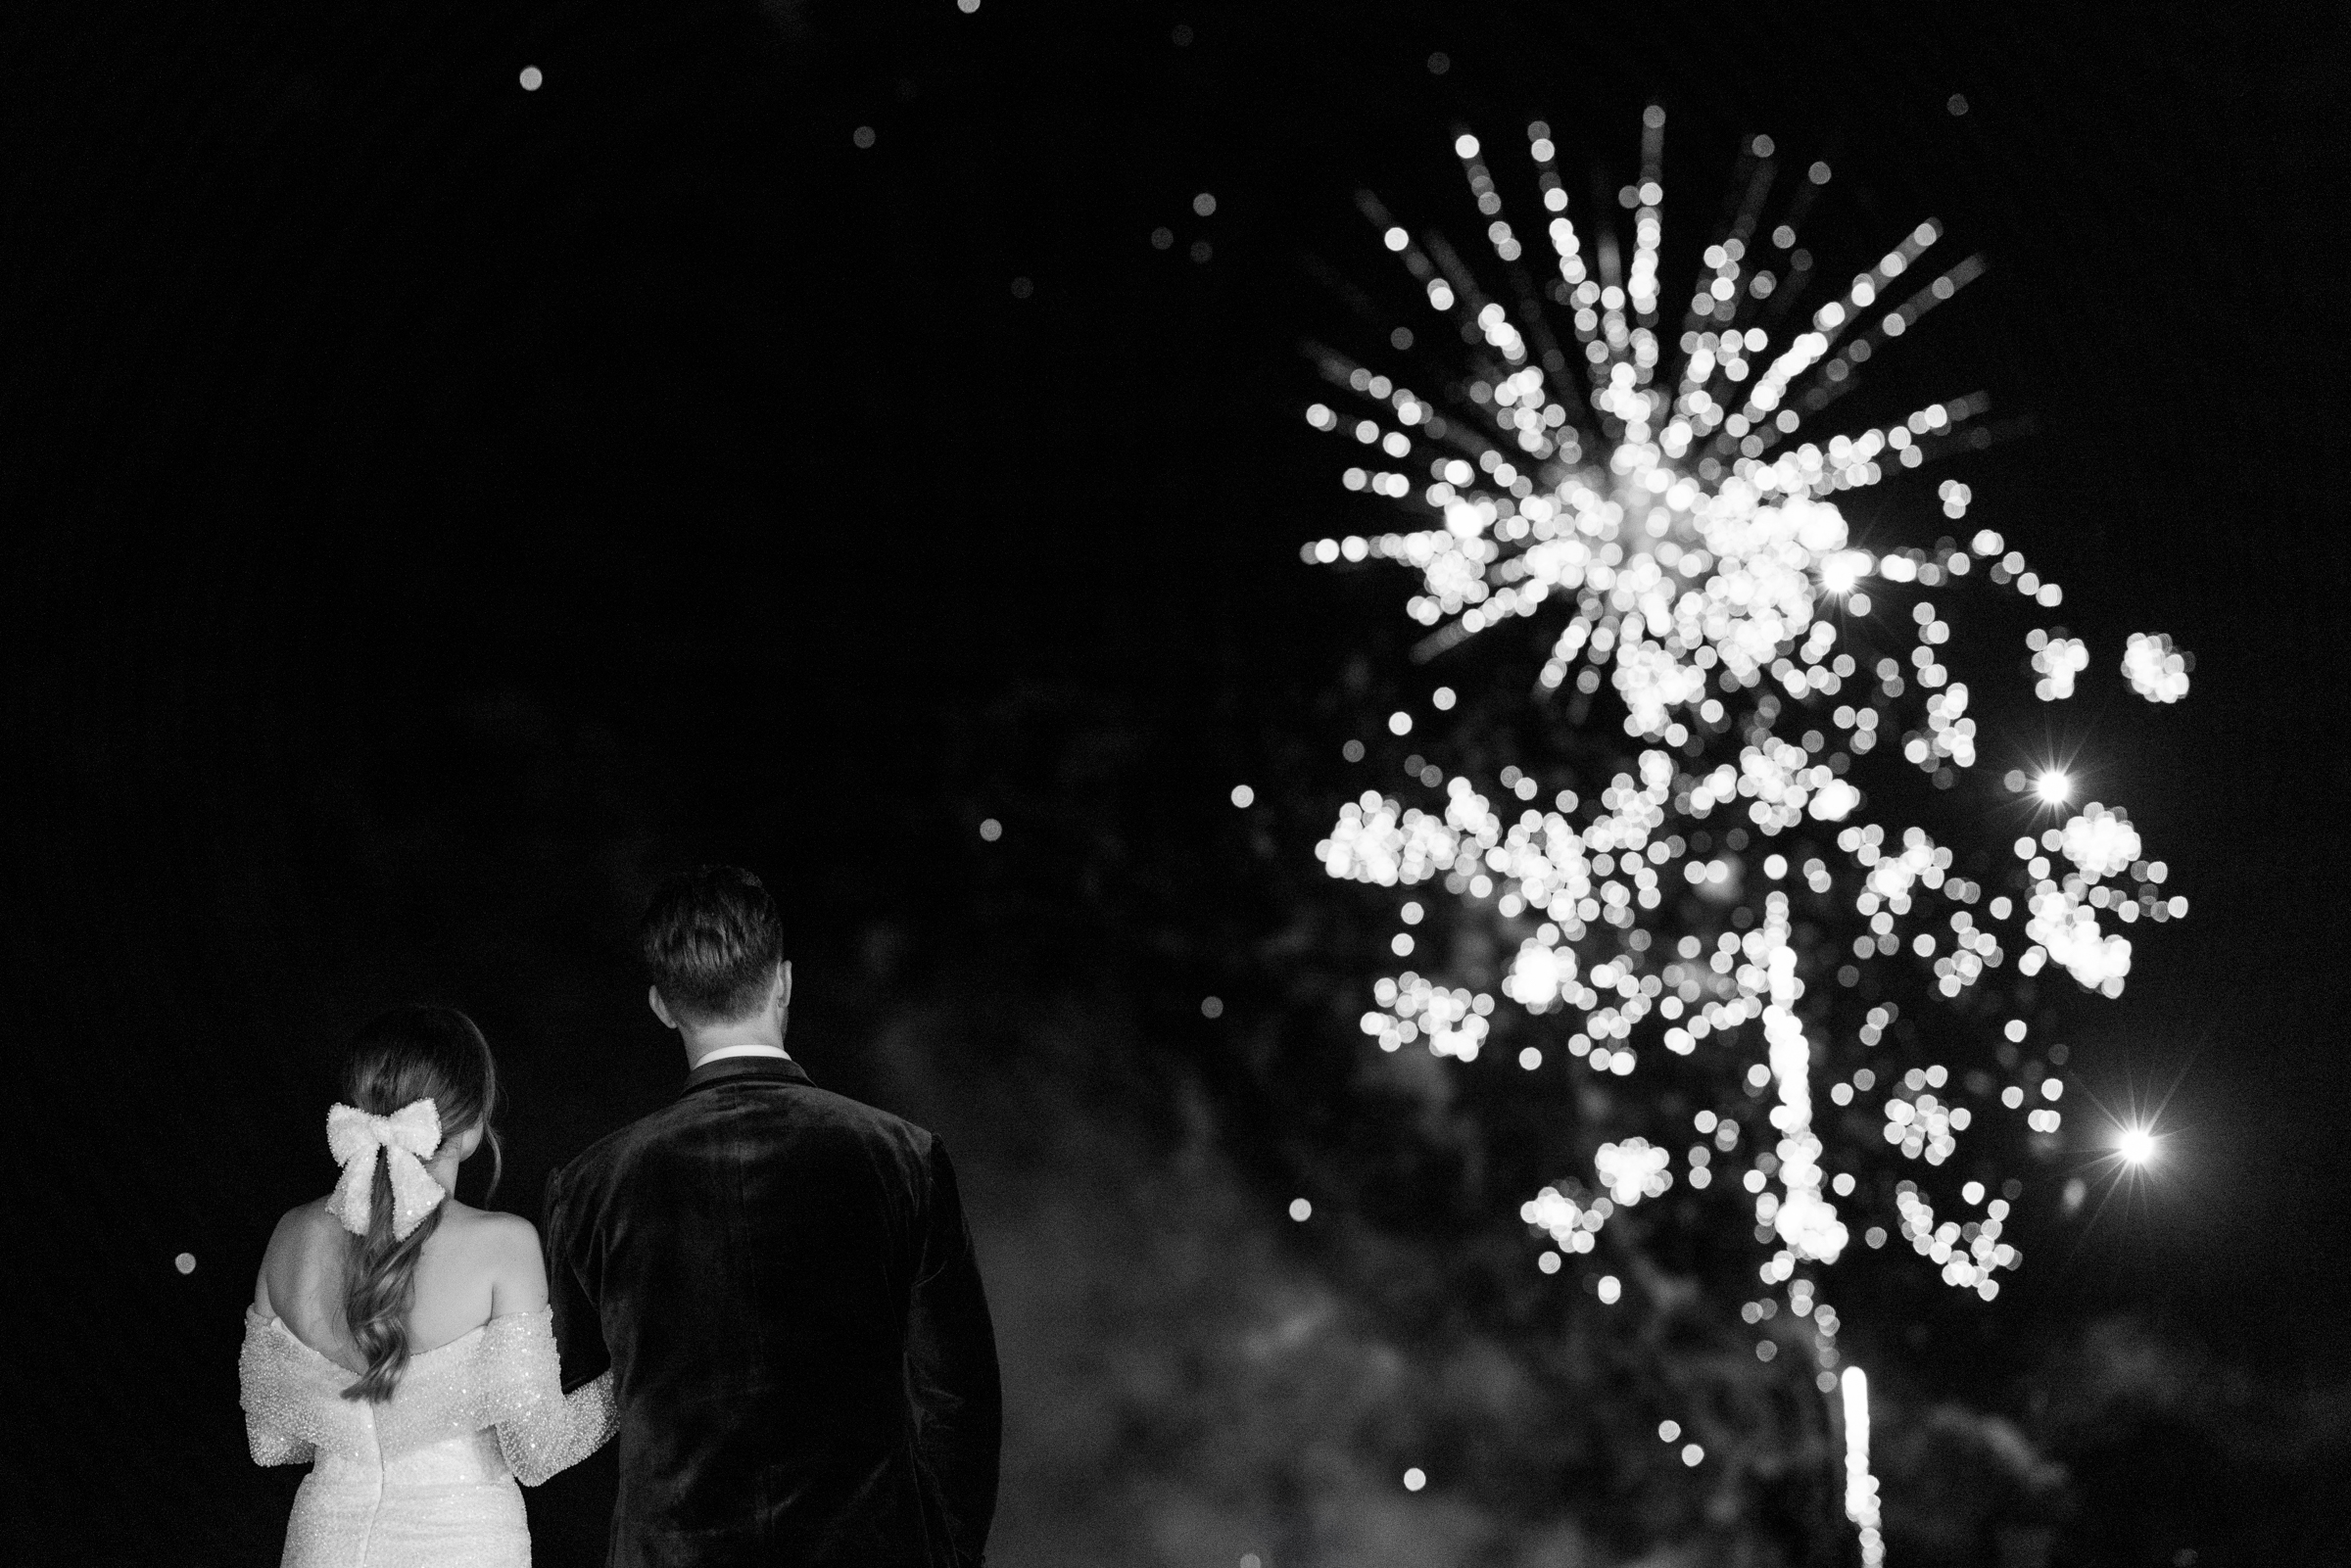 Somerley House wedding photography of fireworks at luxury wedding at Somerley House